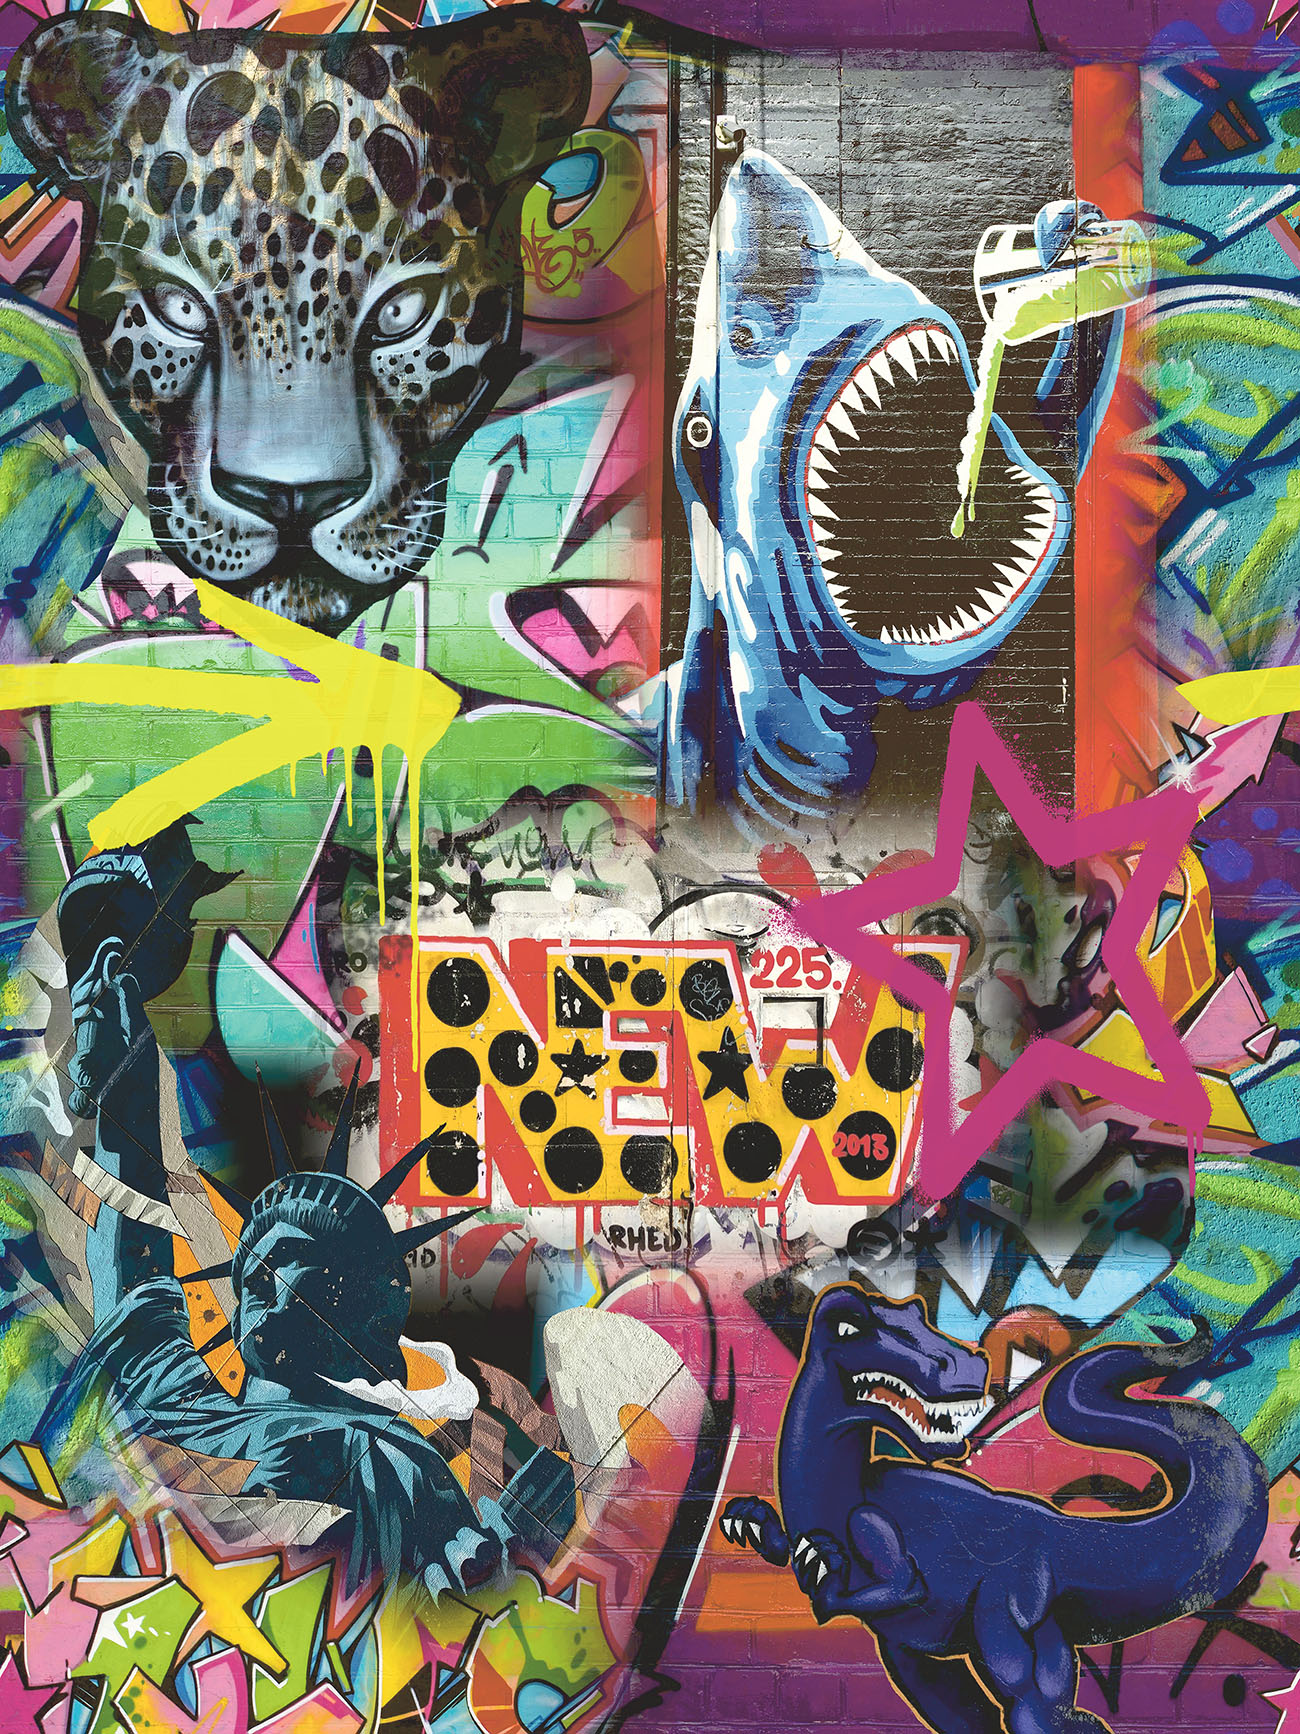 Bakgrundsbilder : graffiti, urban, utforskning, övergiven, byggnad, skola,  jaguar, felidae, polisonger, svartvitt, vilda djur och växter,  illustration, stora katter, tryne, konst, terrestrial djur, grafisk design,  leopard, visuella konsterna, fotografi